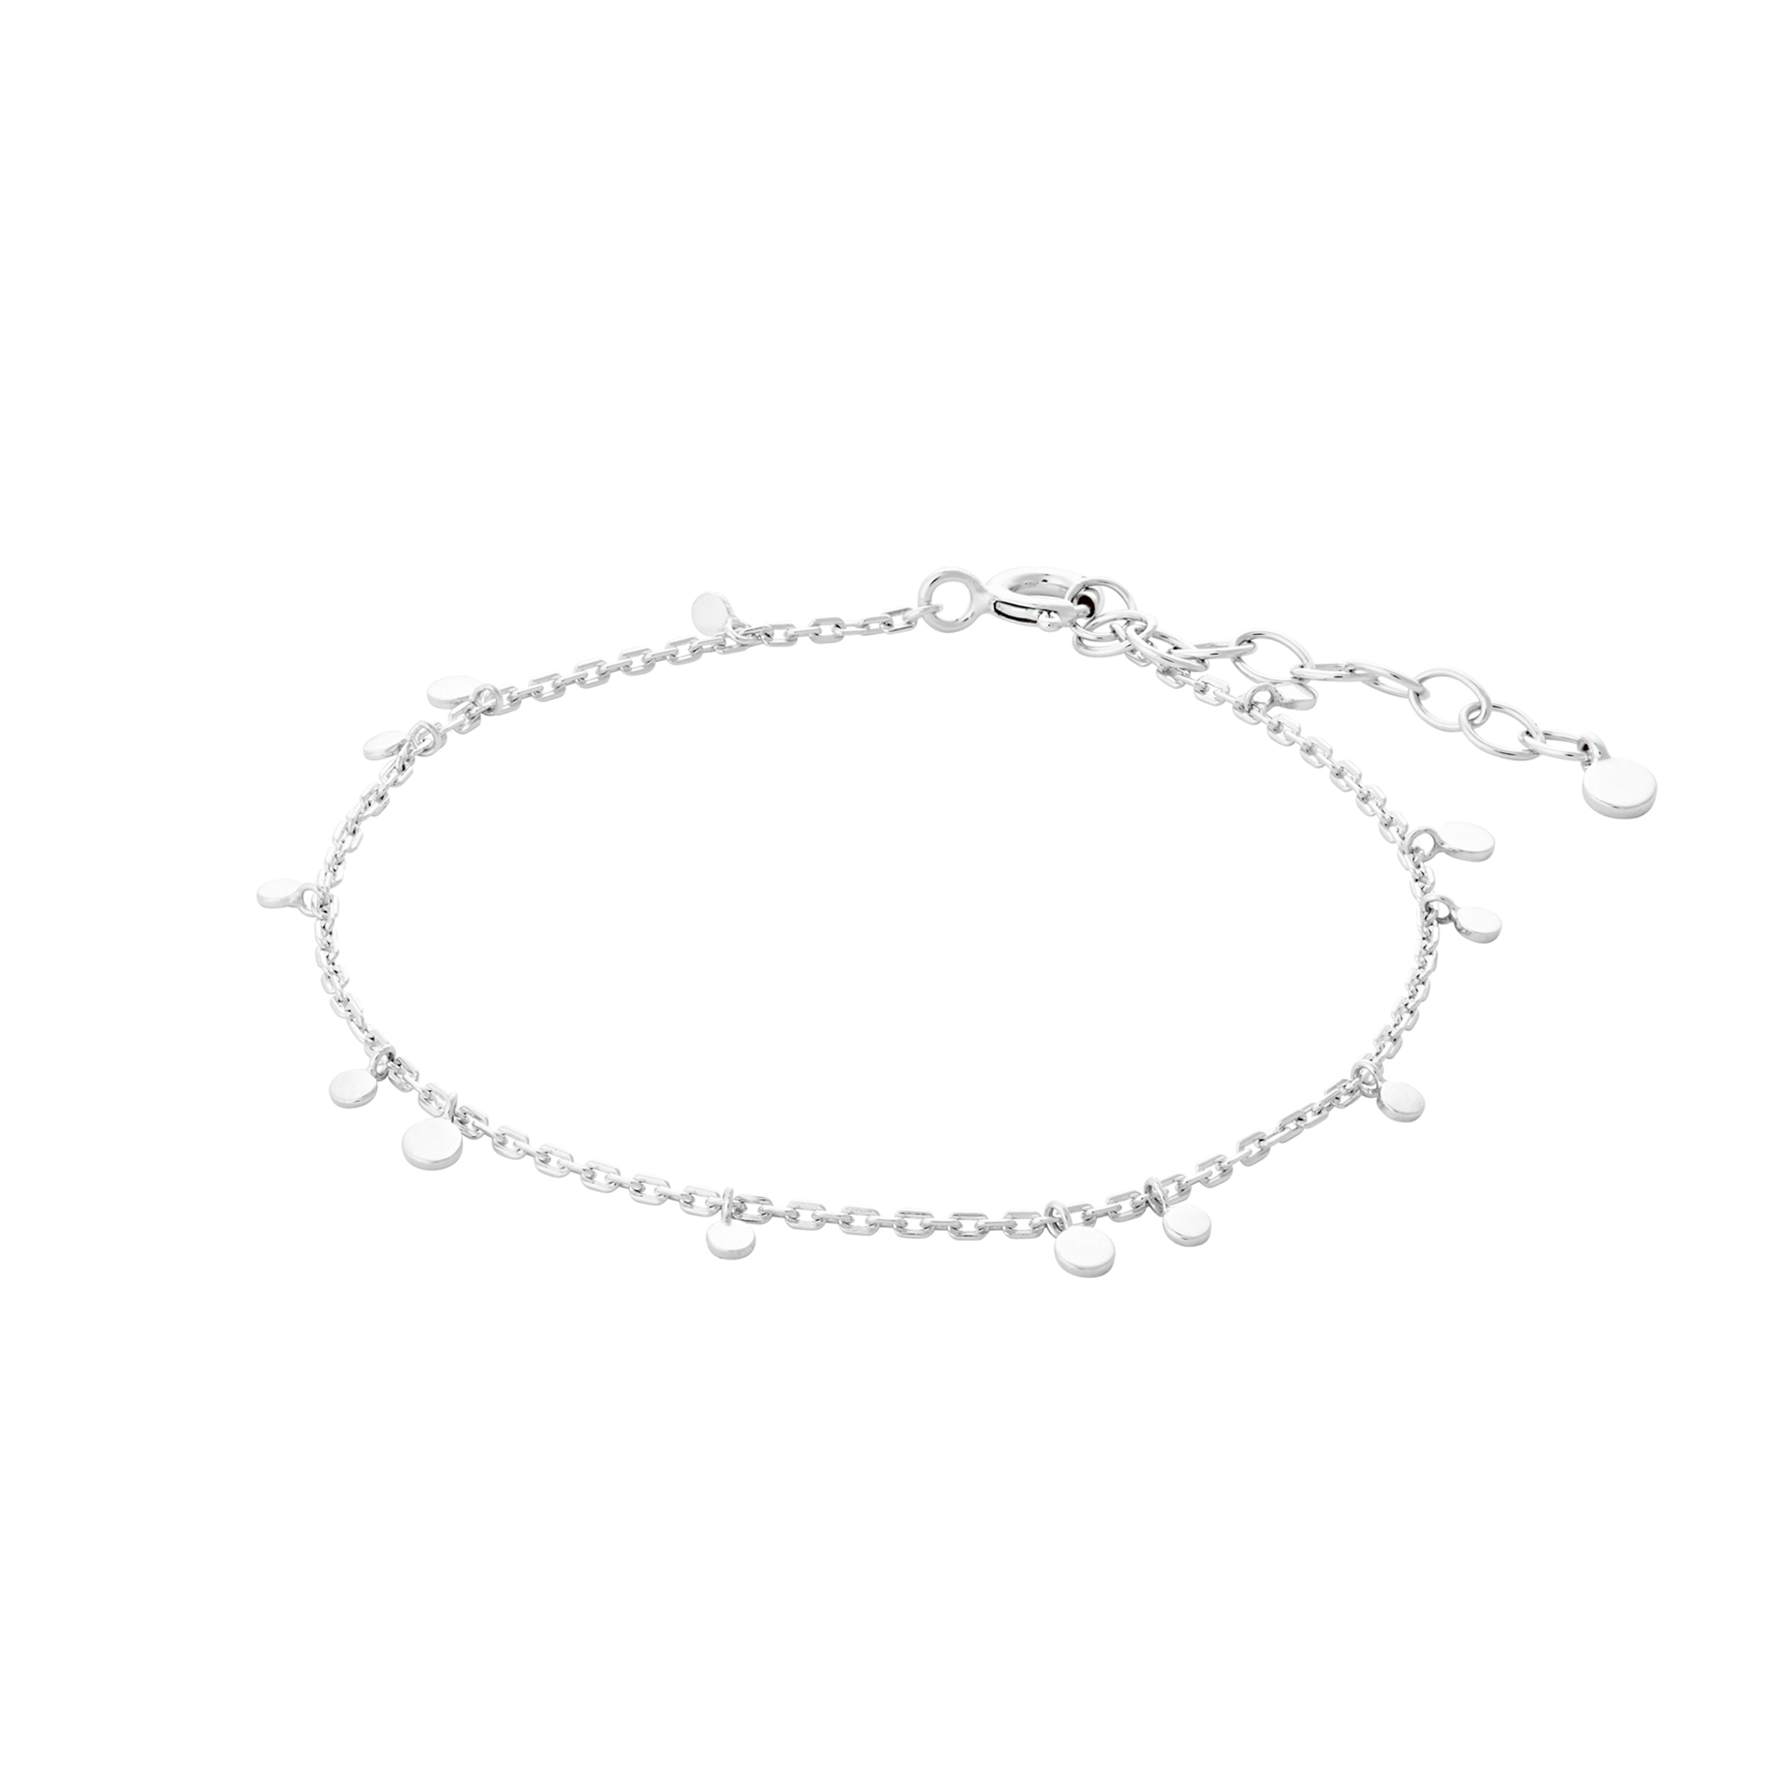 Glow Bracelet from Pernille Corydon in Silver Sterling 925